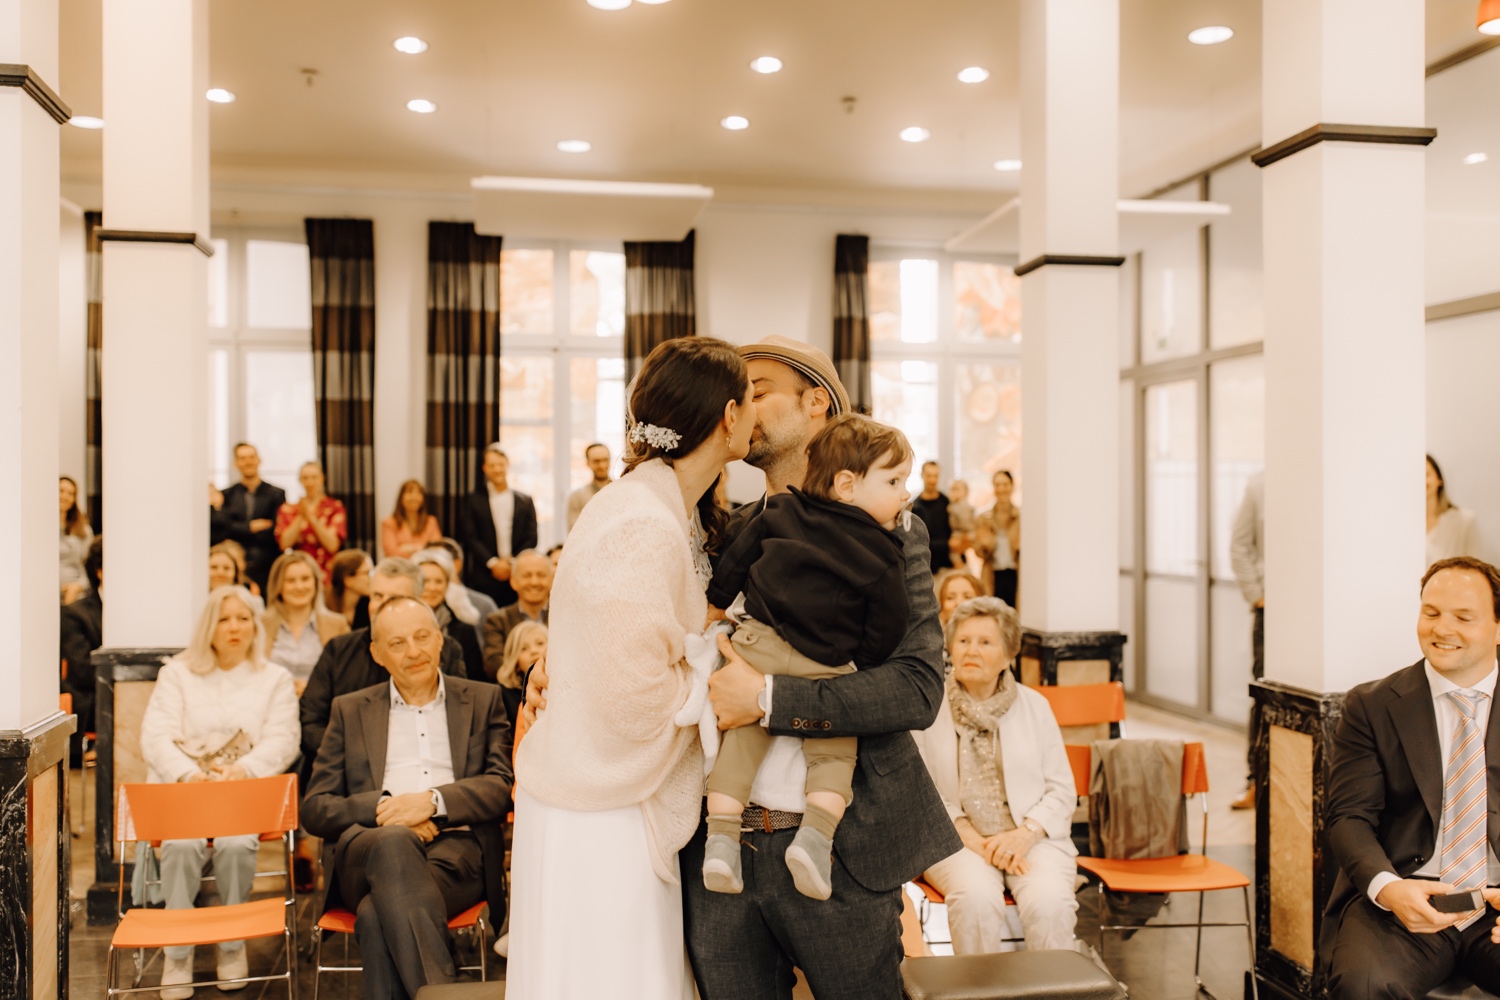 Huwelijksfotograaf Limburg - bruidspaar kust elkaar innig na ja-woord